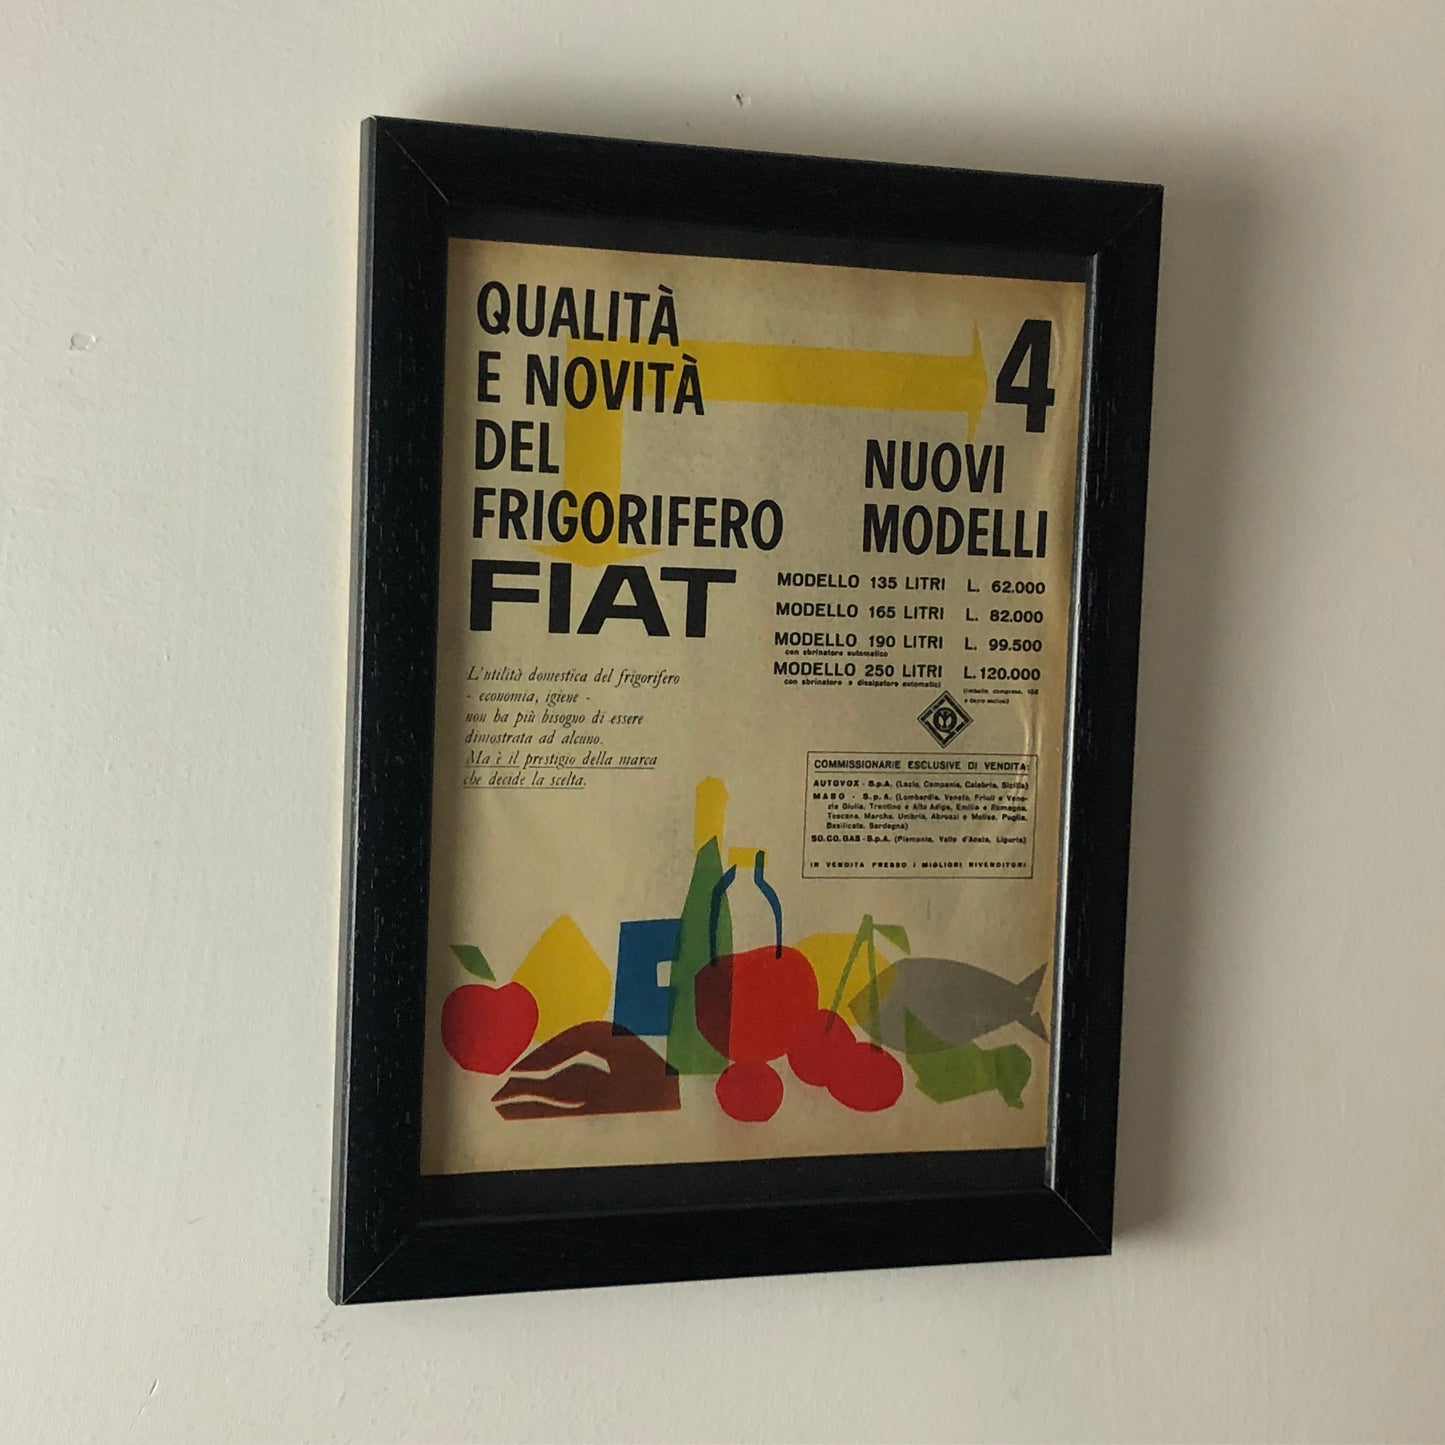 Fiat, Pubblicità Anno 1960 Gamma Frigorifero FIAT con Listino Prezzi e Didascalia in Italiano